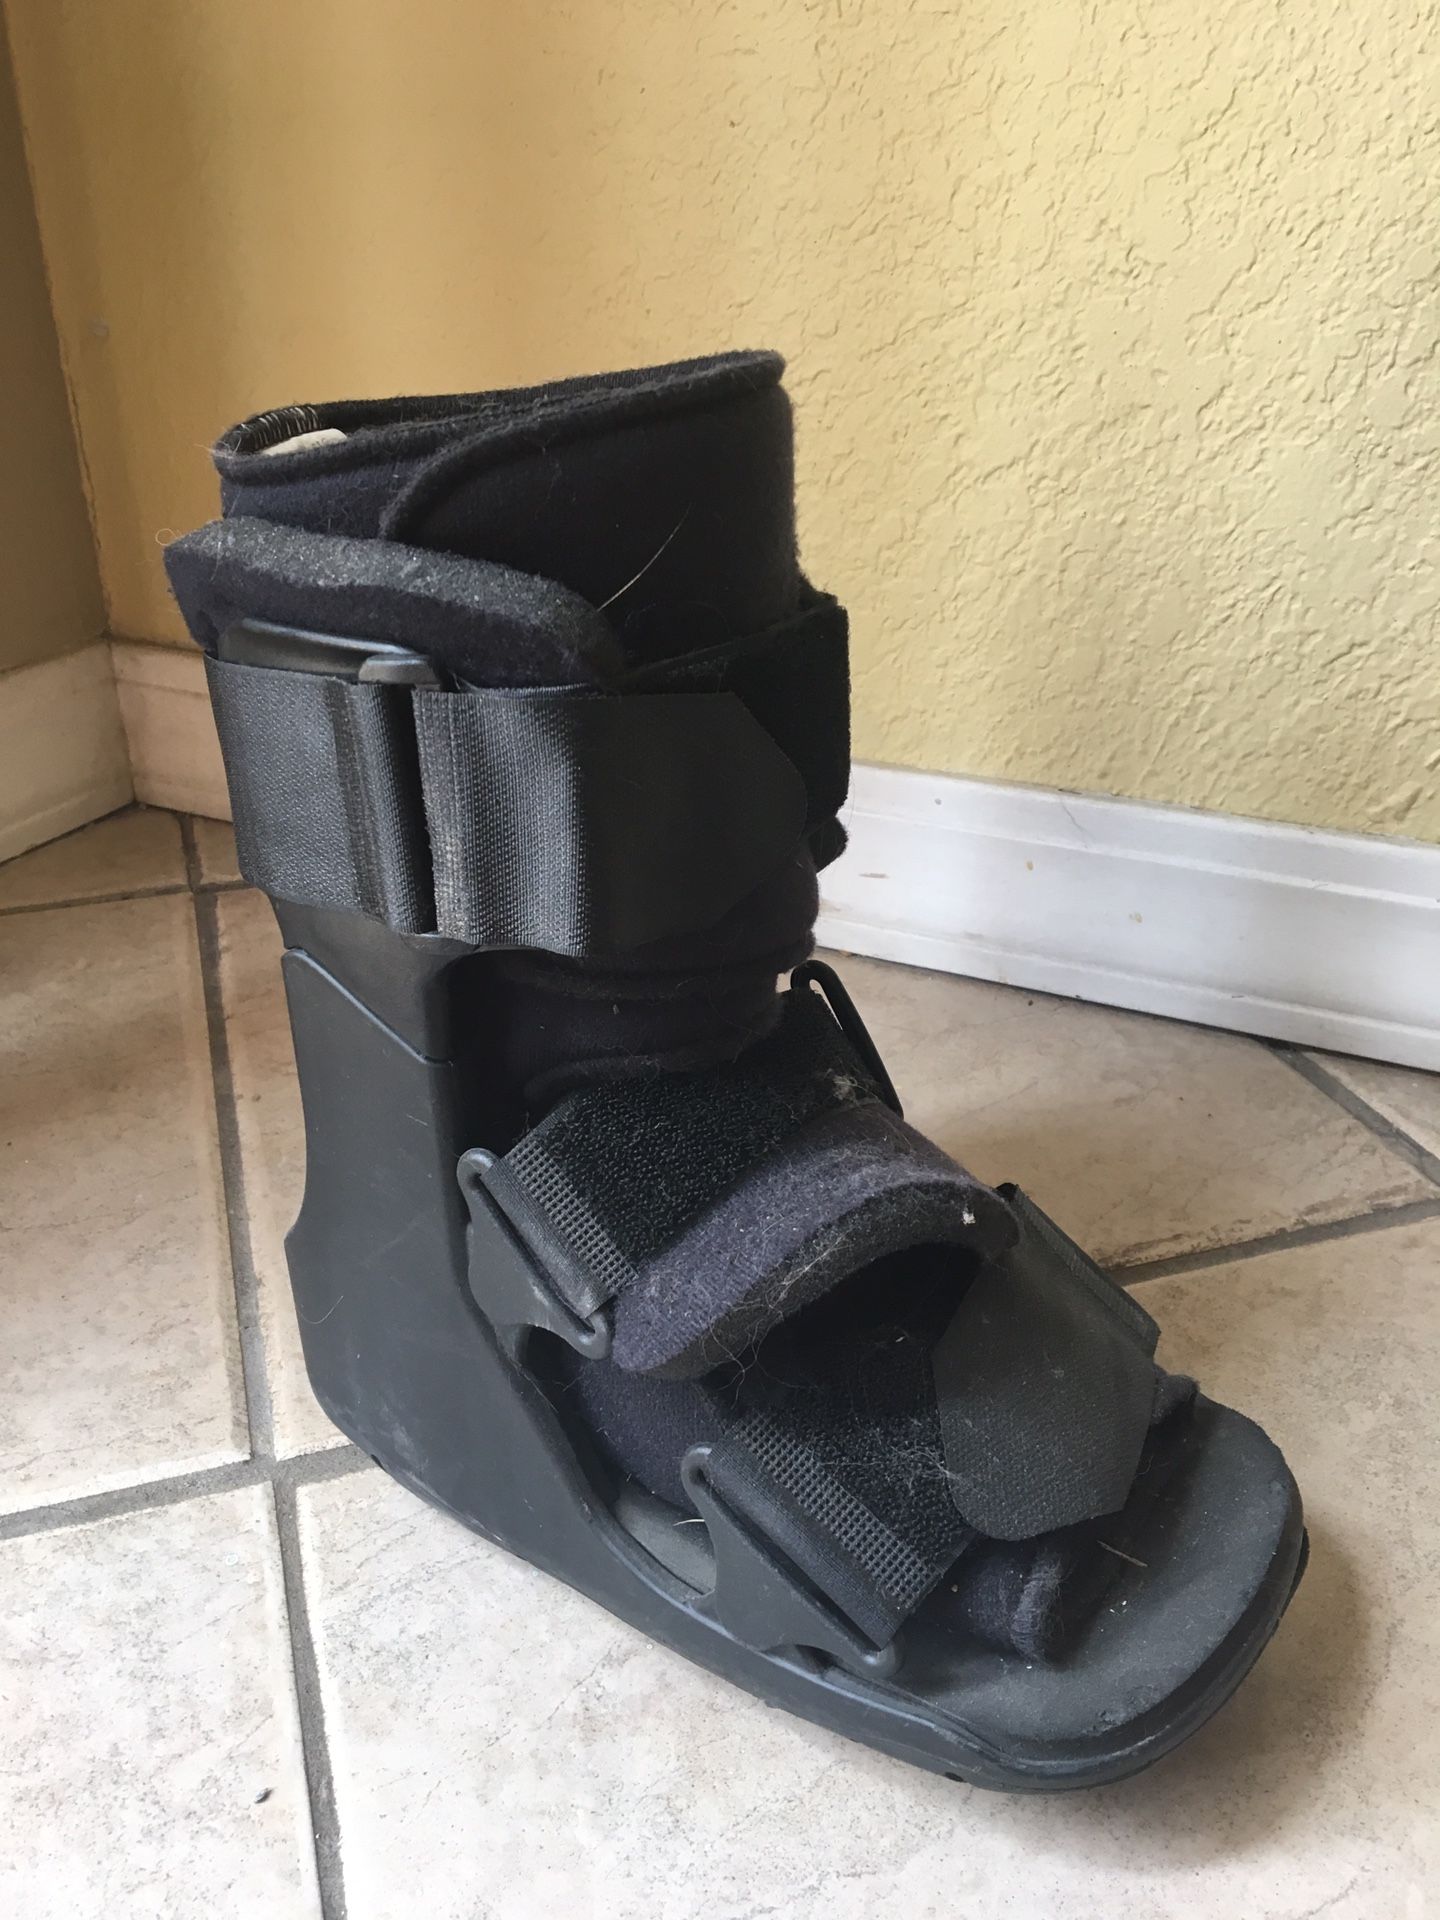 Xceltrax universal foot boot